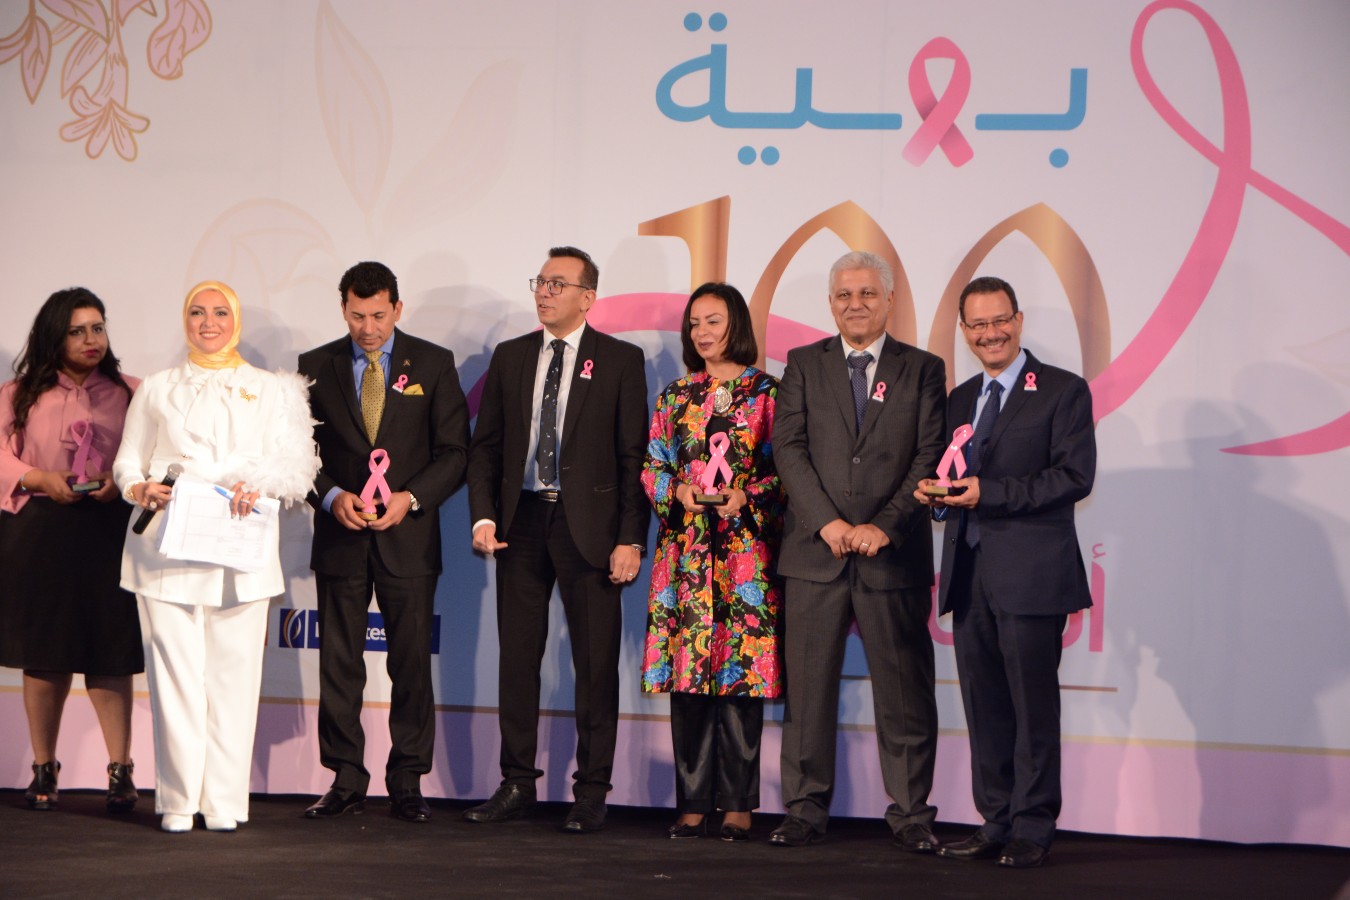 مؤسسة بهيه هي مؤسسة خيرية تهدف لعلاج سرطان الثدي بالمجان، تم افتتاحها منذ أربع سنوات وسط أحلام بسيطة من ضمنها استقبال ١٠ آلاف سيدة ولكن بهبة اليوم تستقبل ١٠٠ ألف سيدة